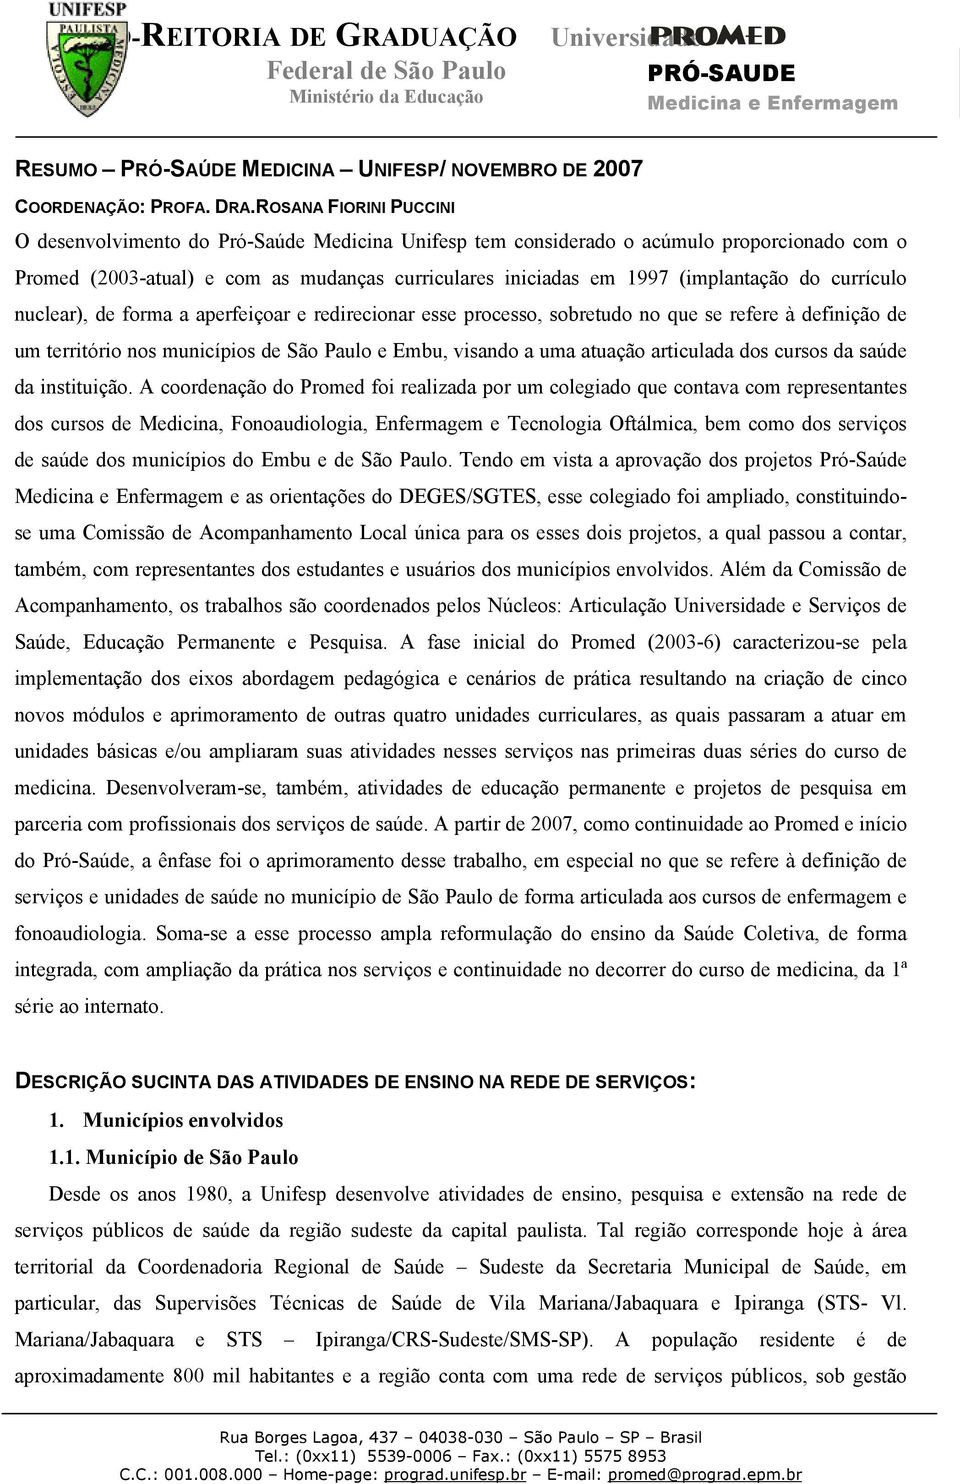 currículo nuclear), de forma a aperfeiçoar e redirecionar esse processo, sobretudo no que se refere à definição de um território nos municípios de São Paulo e Embu, visando a uma atuação articulada